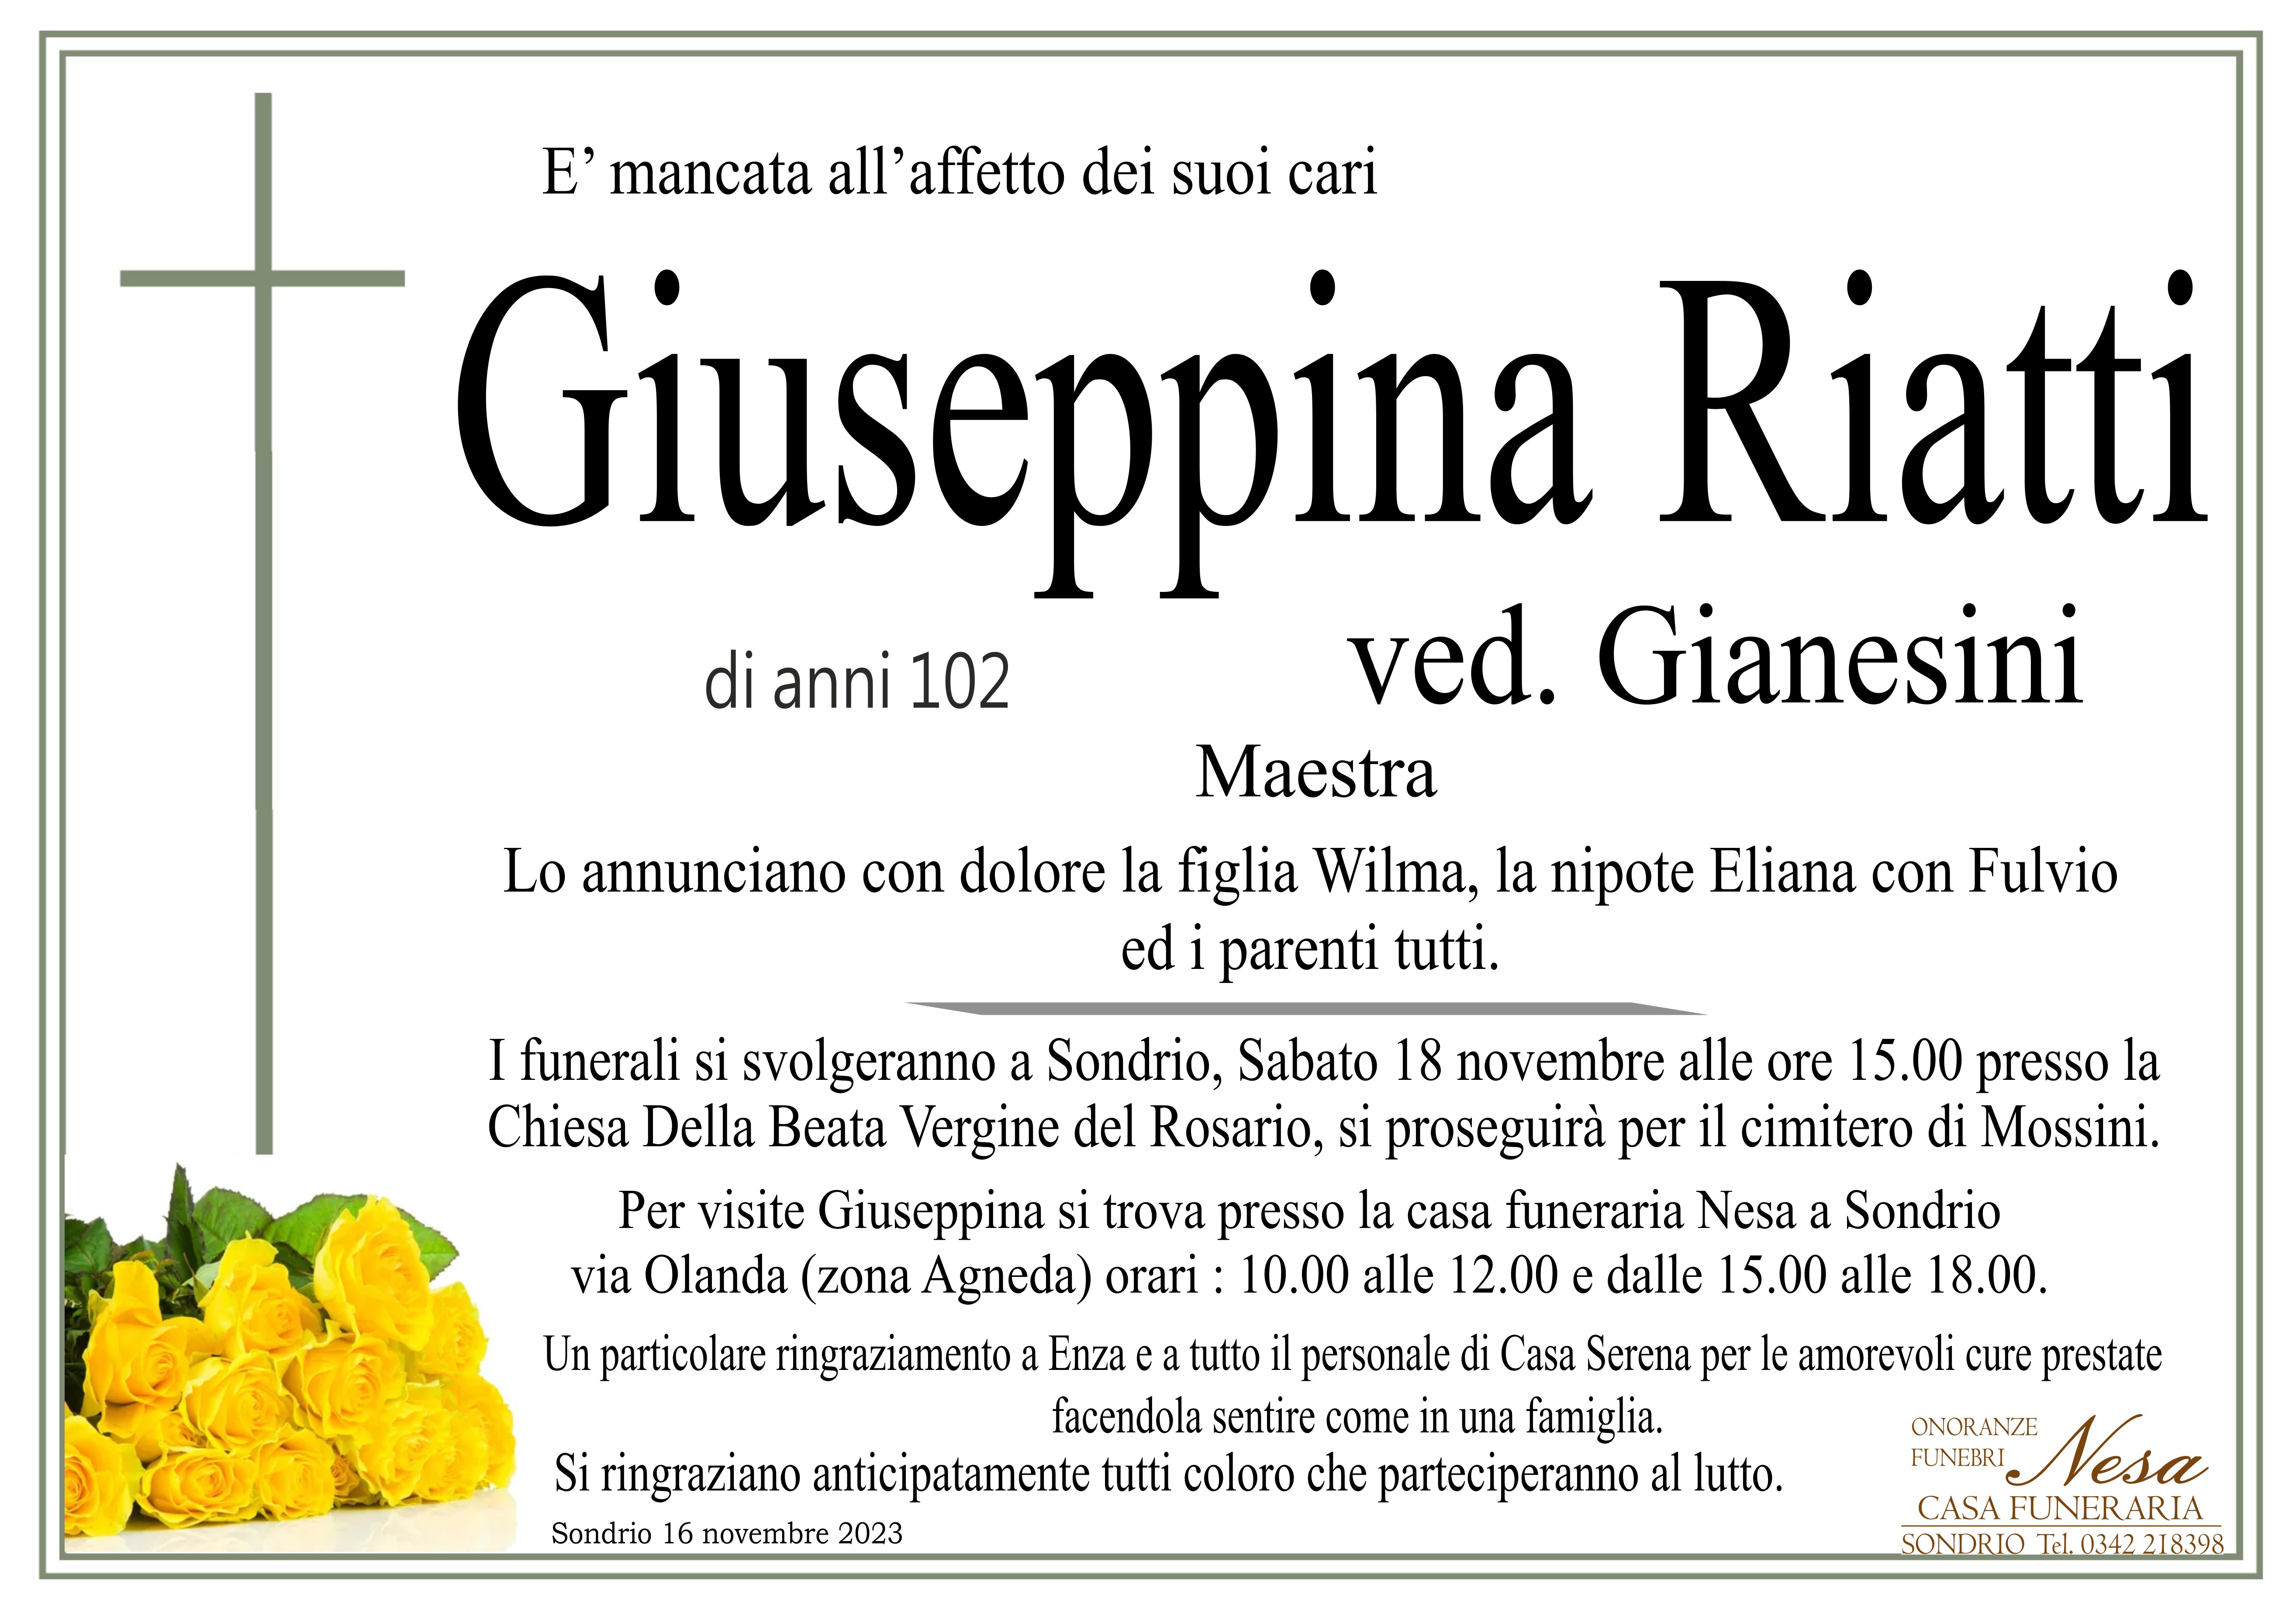 Necrologio Giuseppina Riatti ved. Gianesini